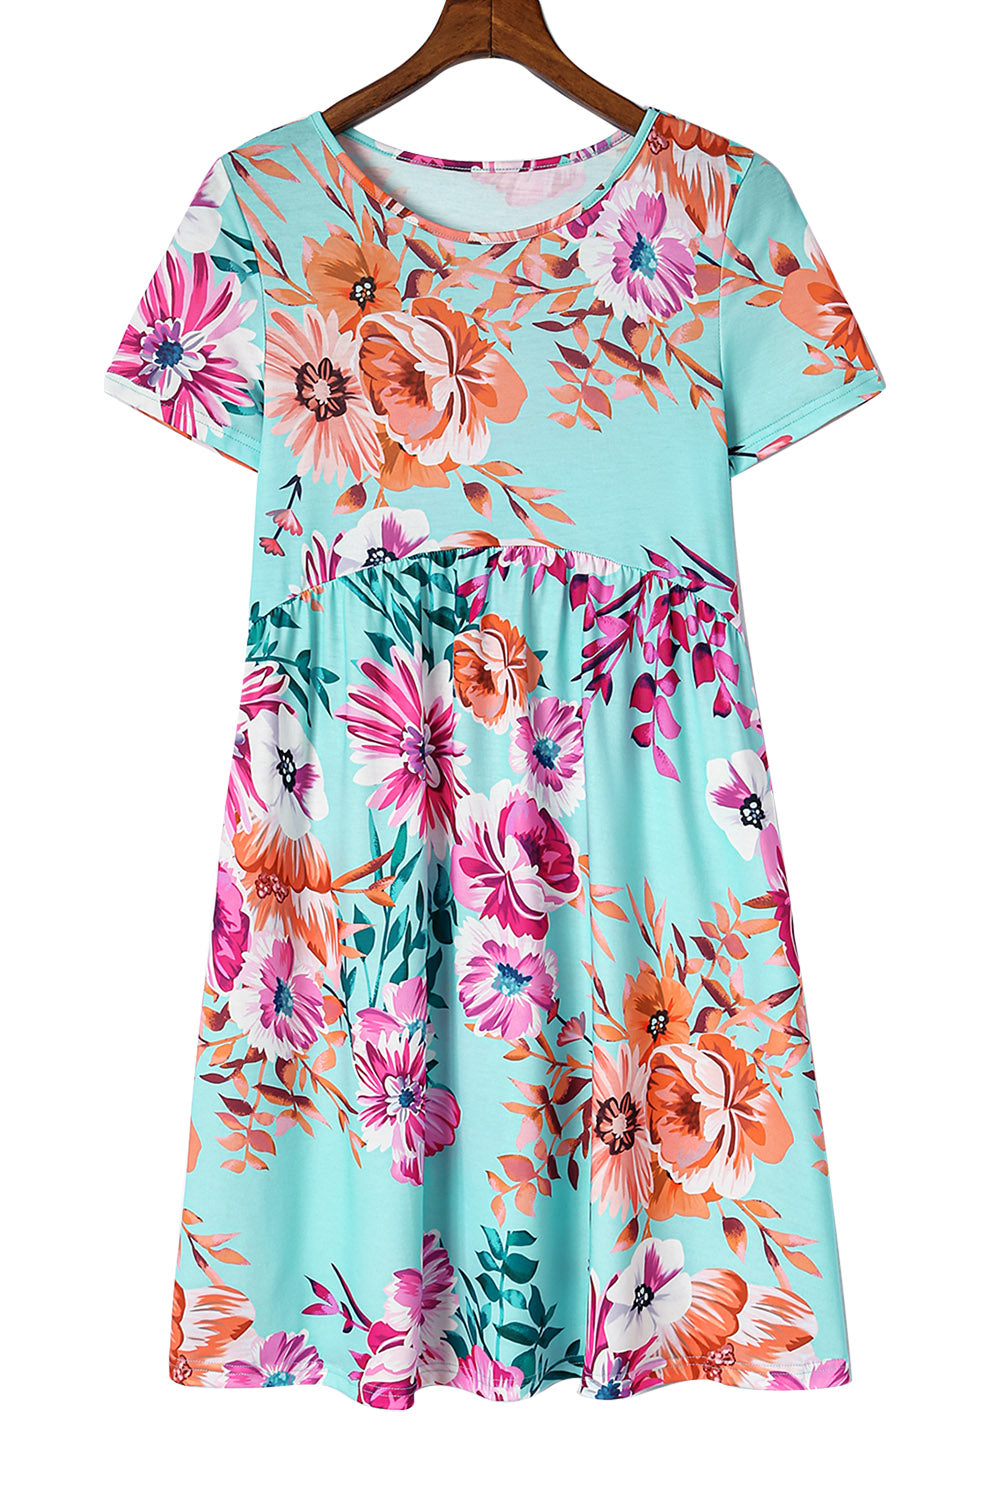 Sky Blue Short Sleeve High Waist Floral T-shirt Dress